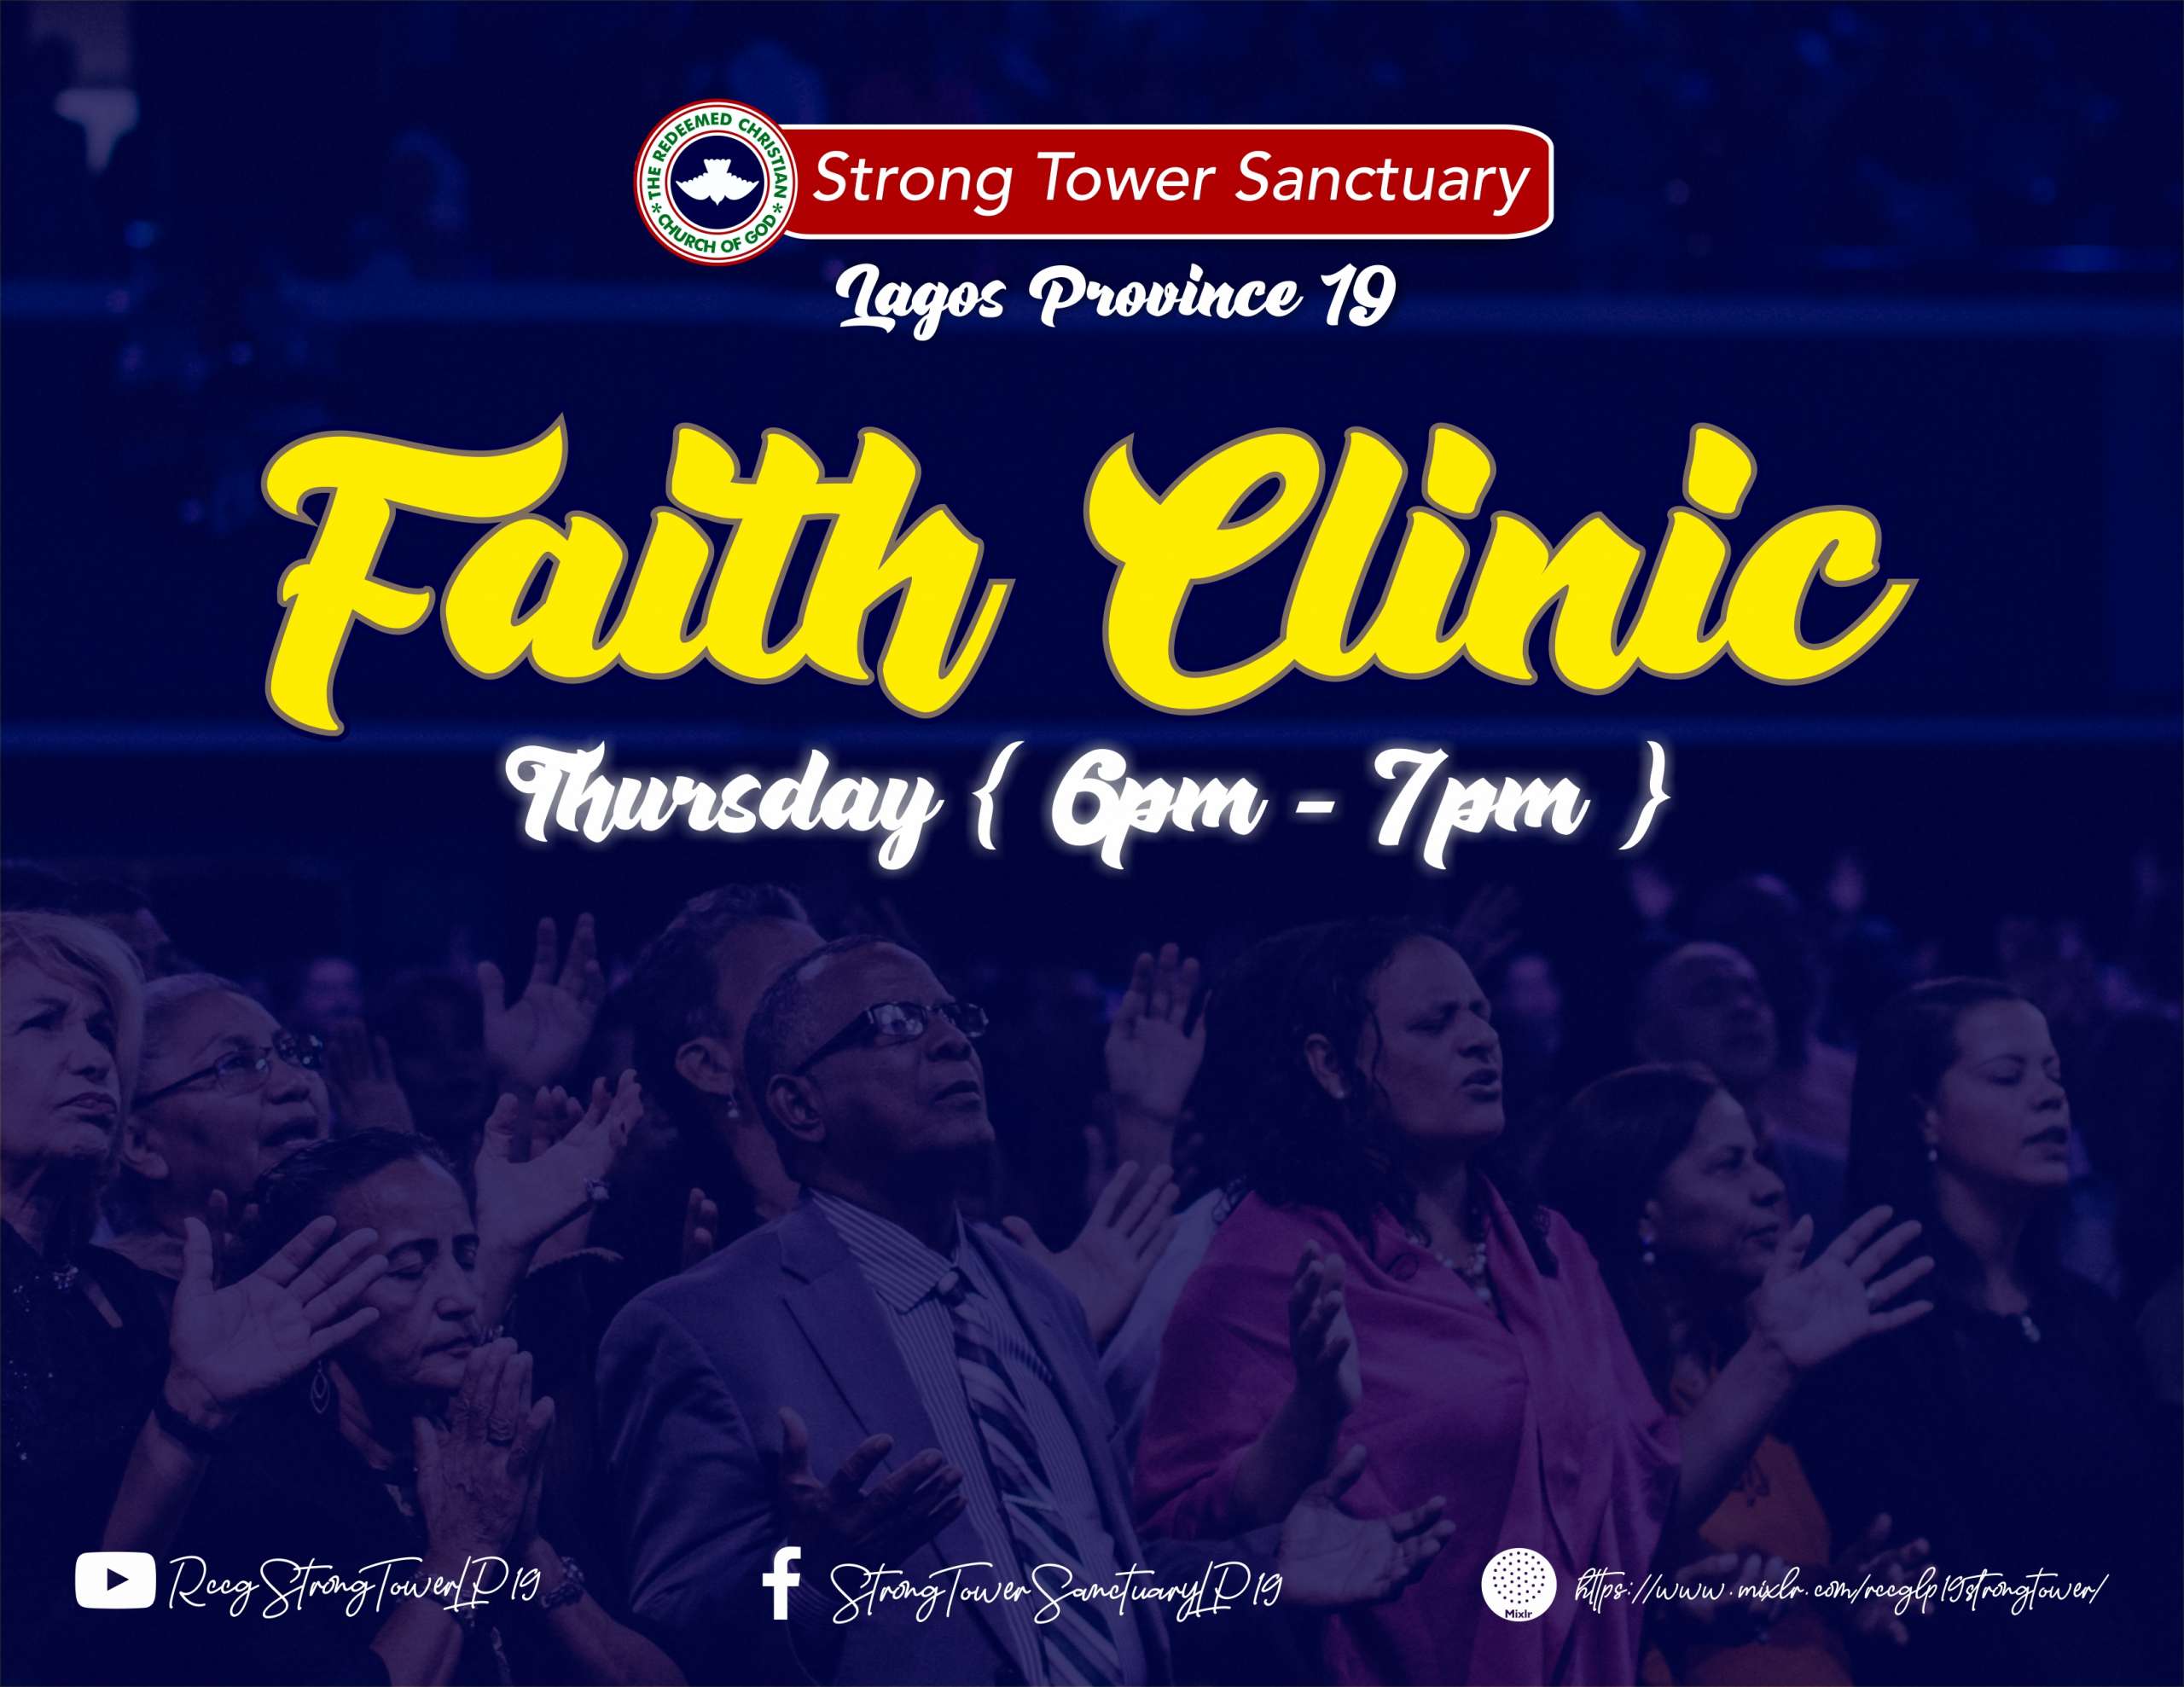 Faith Clinic